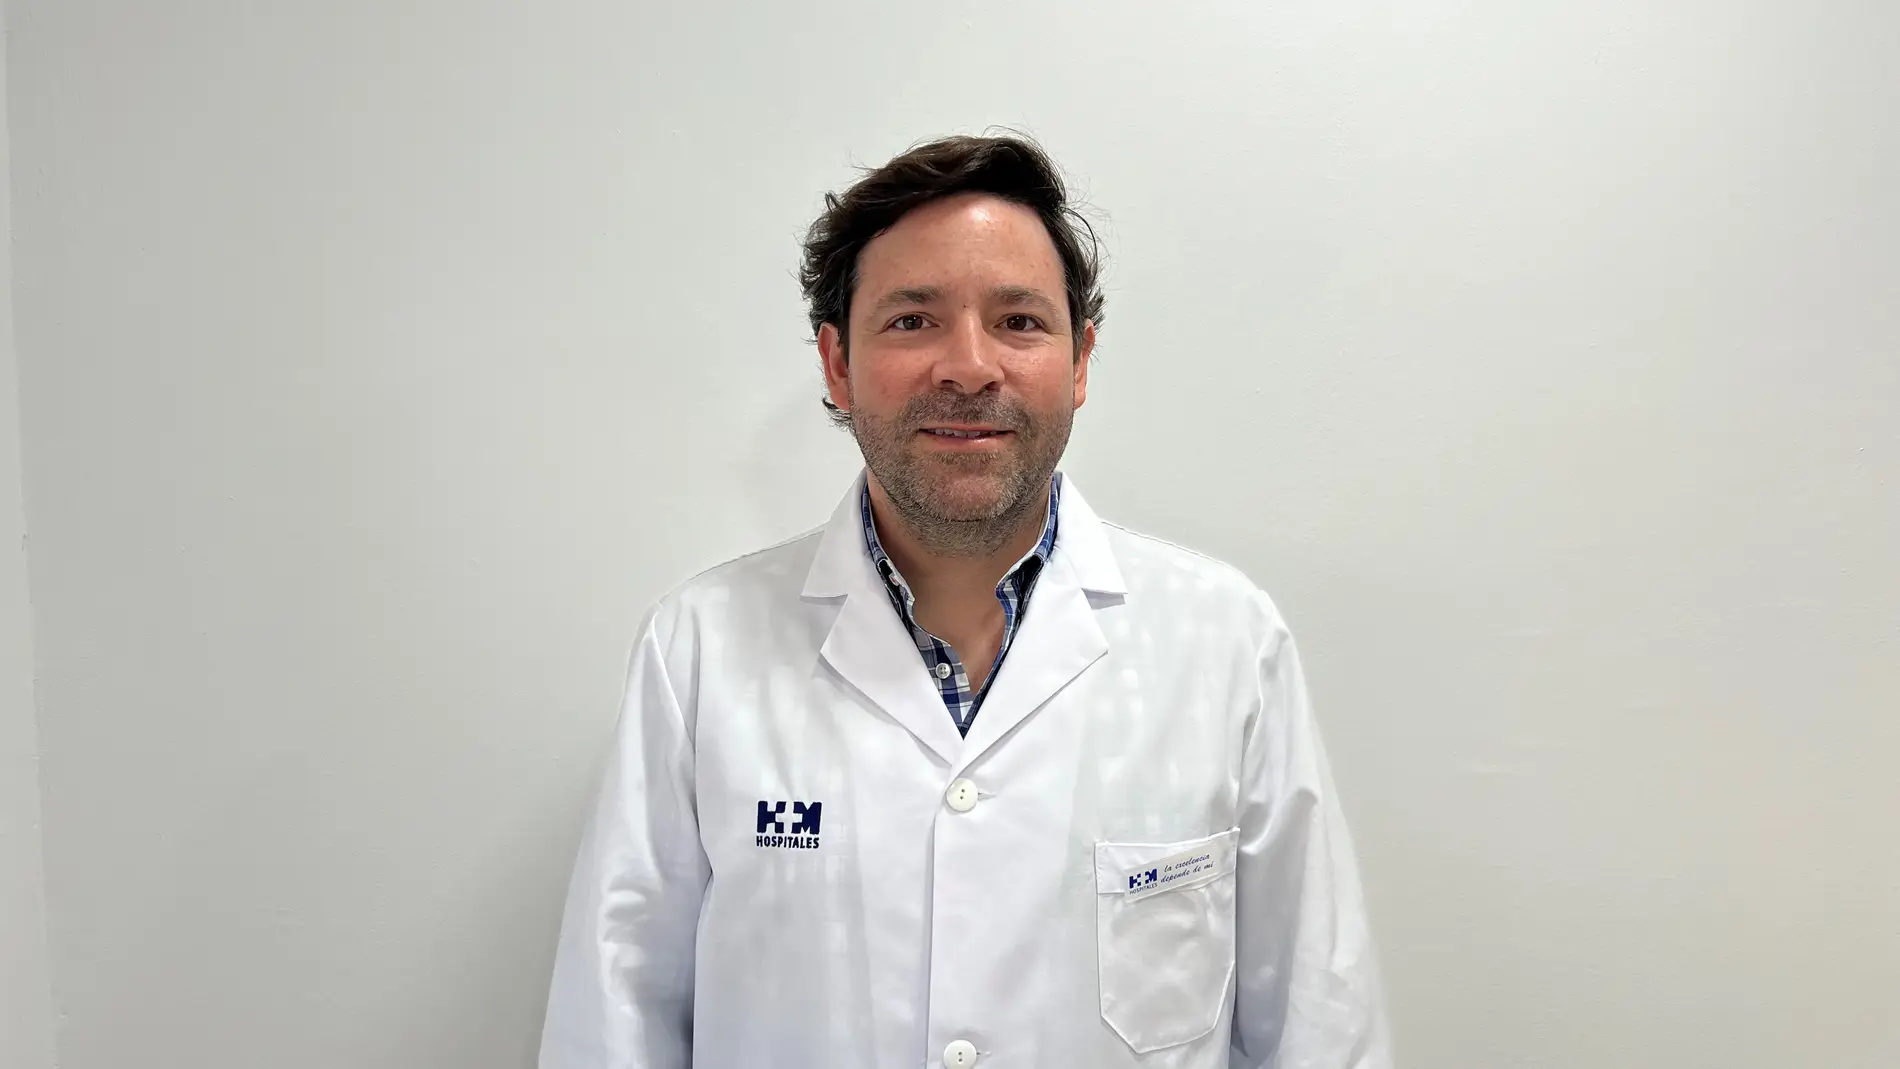 El Dr. Carlos Alegría, nuevo jefe de servicio de Aparato Digestivo de HM Hospitales en la provincia de Málaga